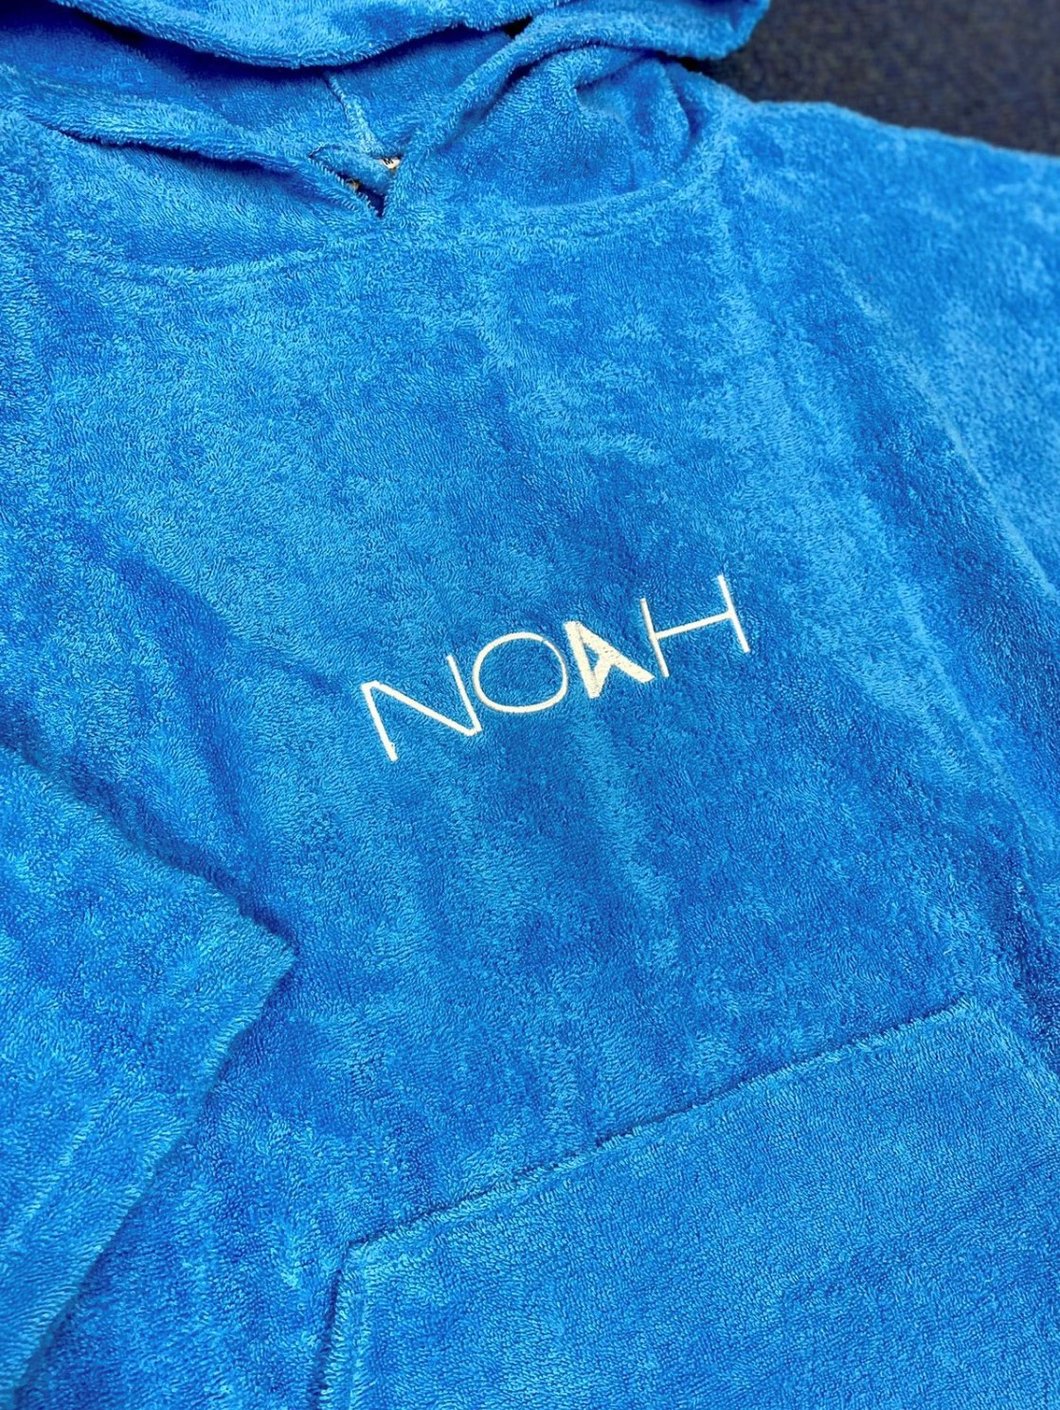 NOAH KIDS PONCHO TOWEL ROBE BLUE XS